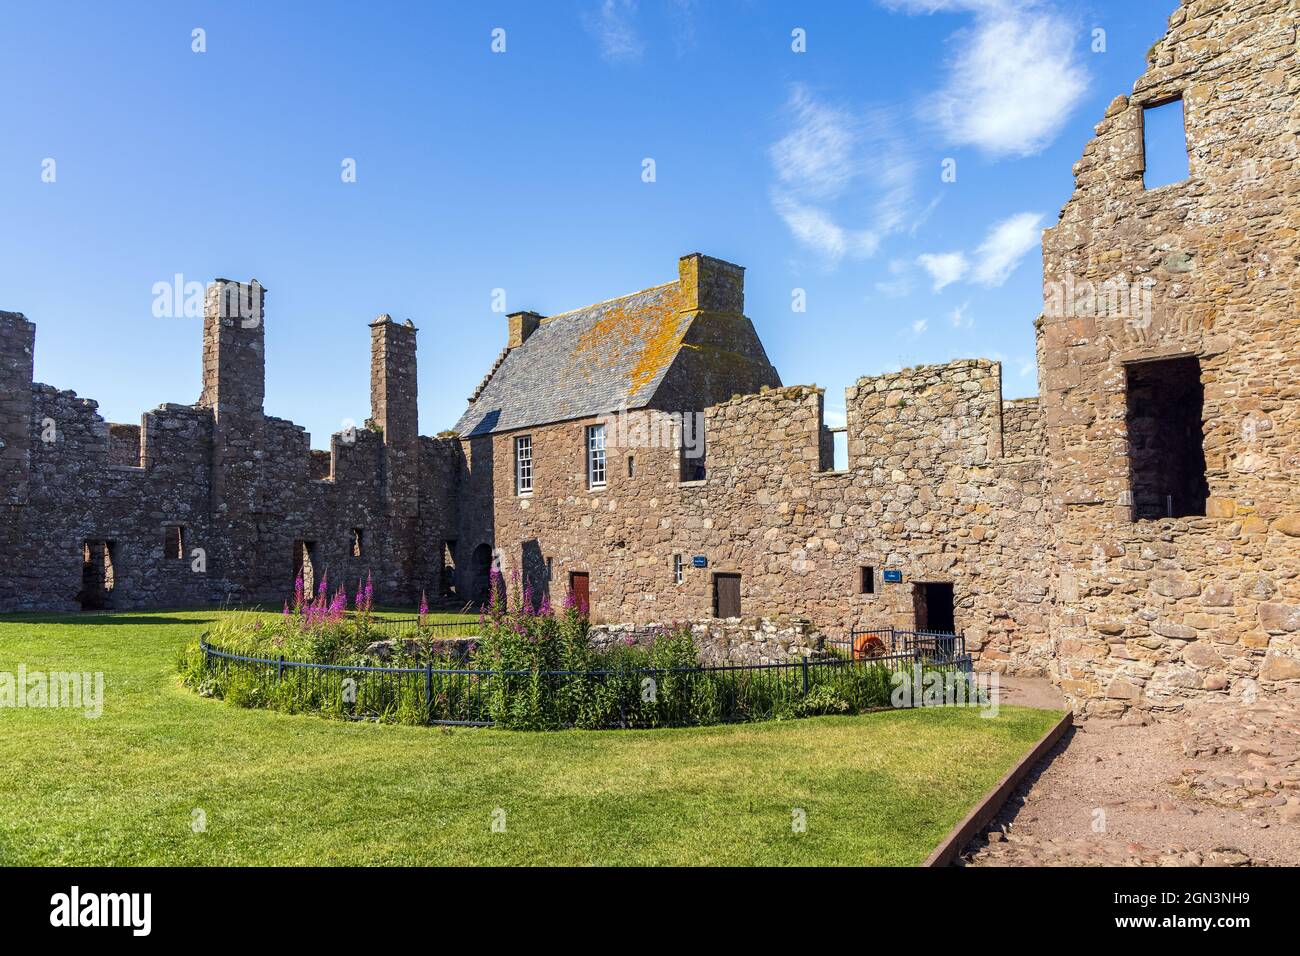 Resti della fortezza medievale, Dunnottar Castello, situato su un promontorio roccioso sulla costa nord-orientale della Scozia vicino Stonehaven, Aberdeenshire. Foto Stock